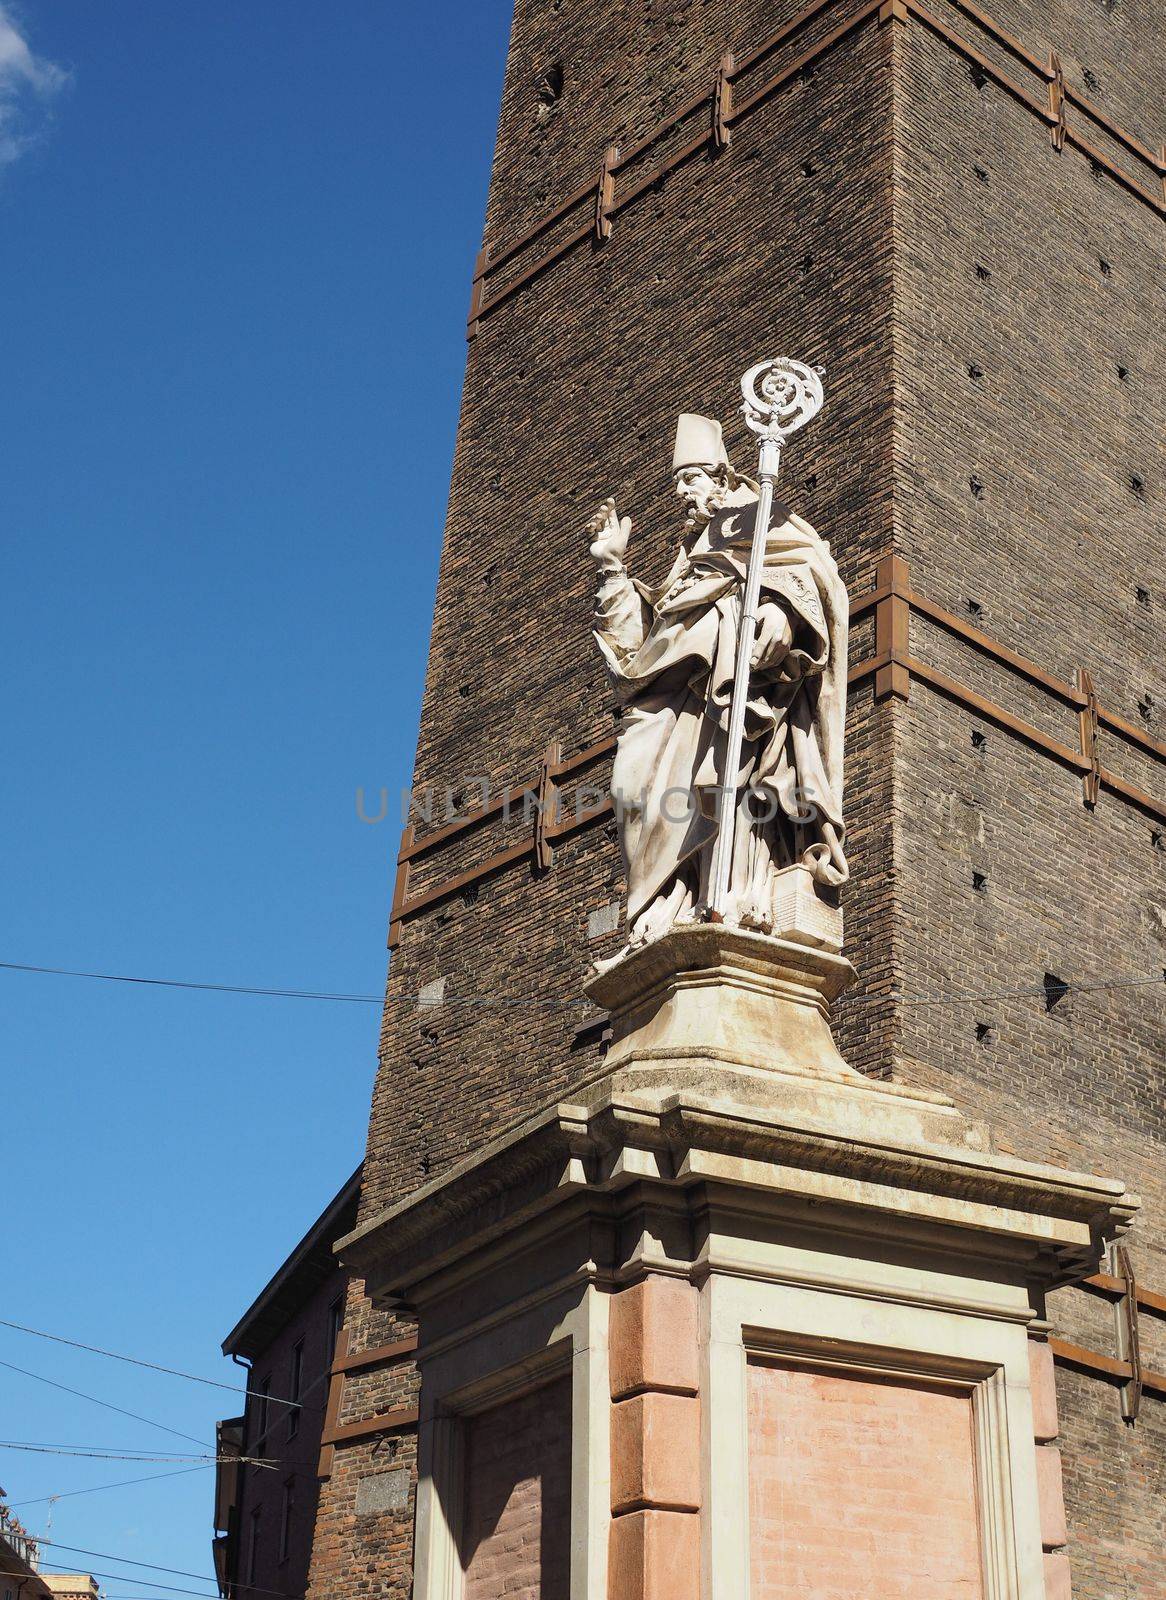 San Petronio statue in Bologna by claudiodivizia